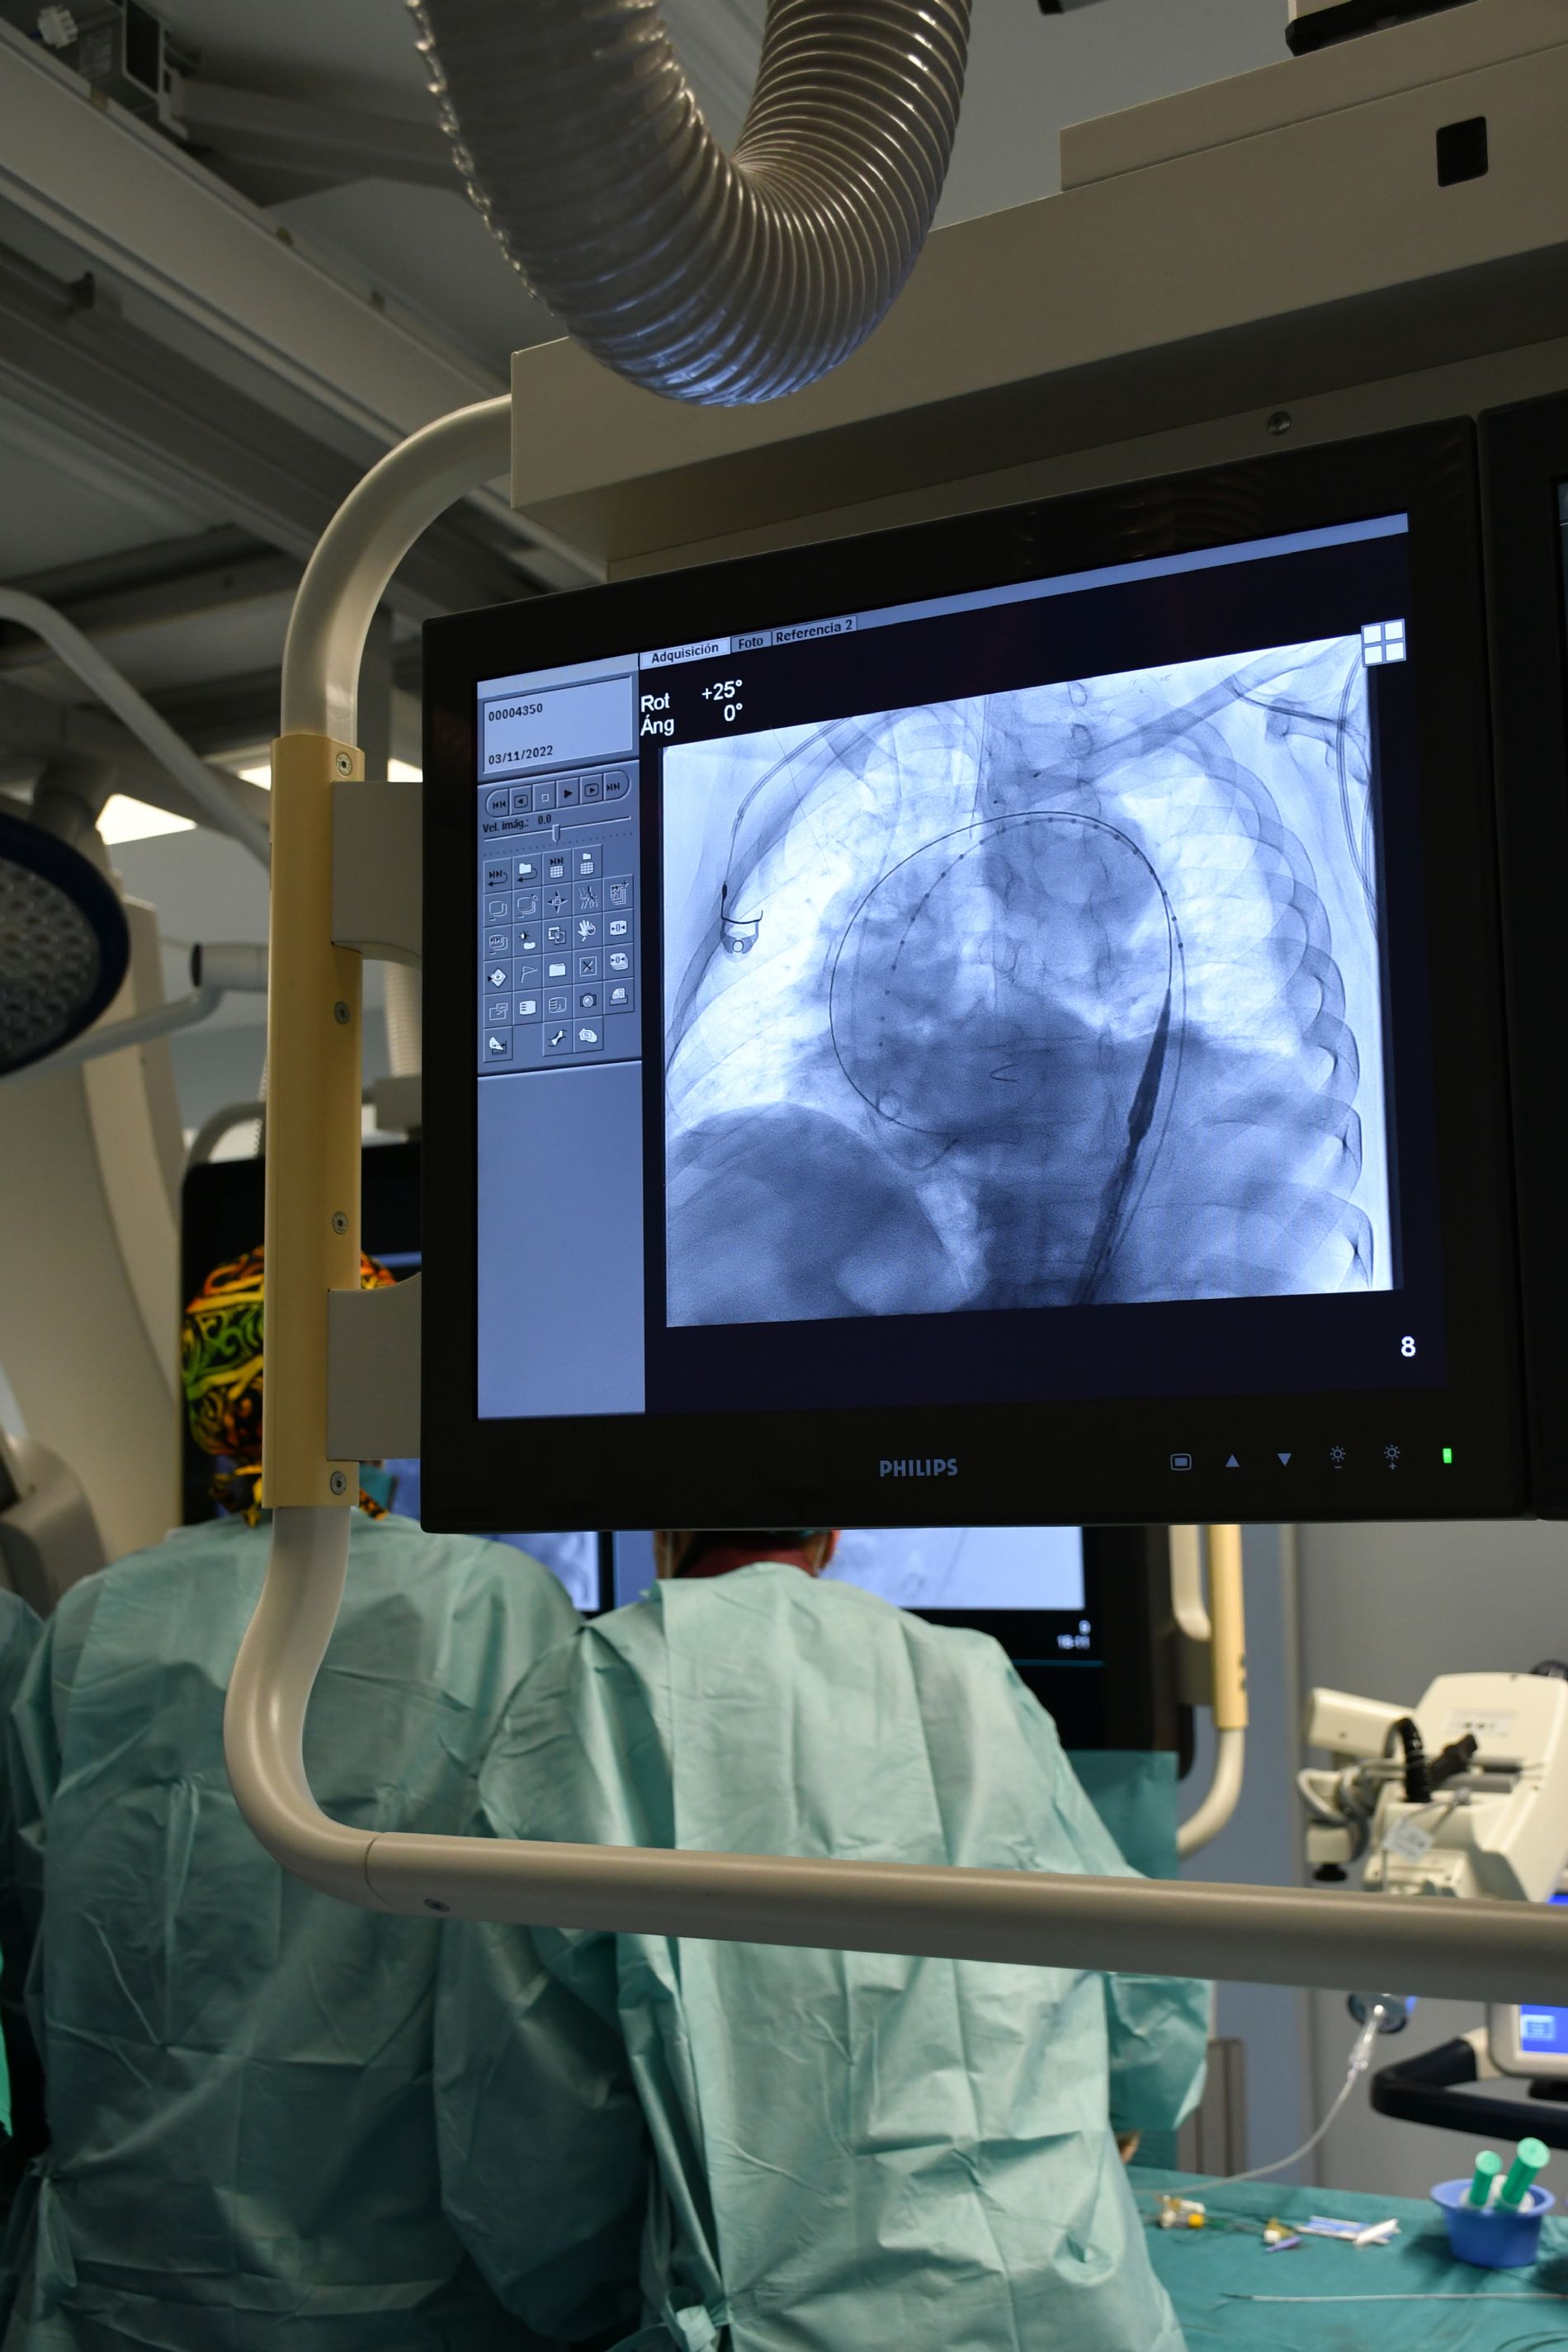 El Centro Mdico implanta por primera vez una endoprtesis de doble rama para una aneurisma de arco artico